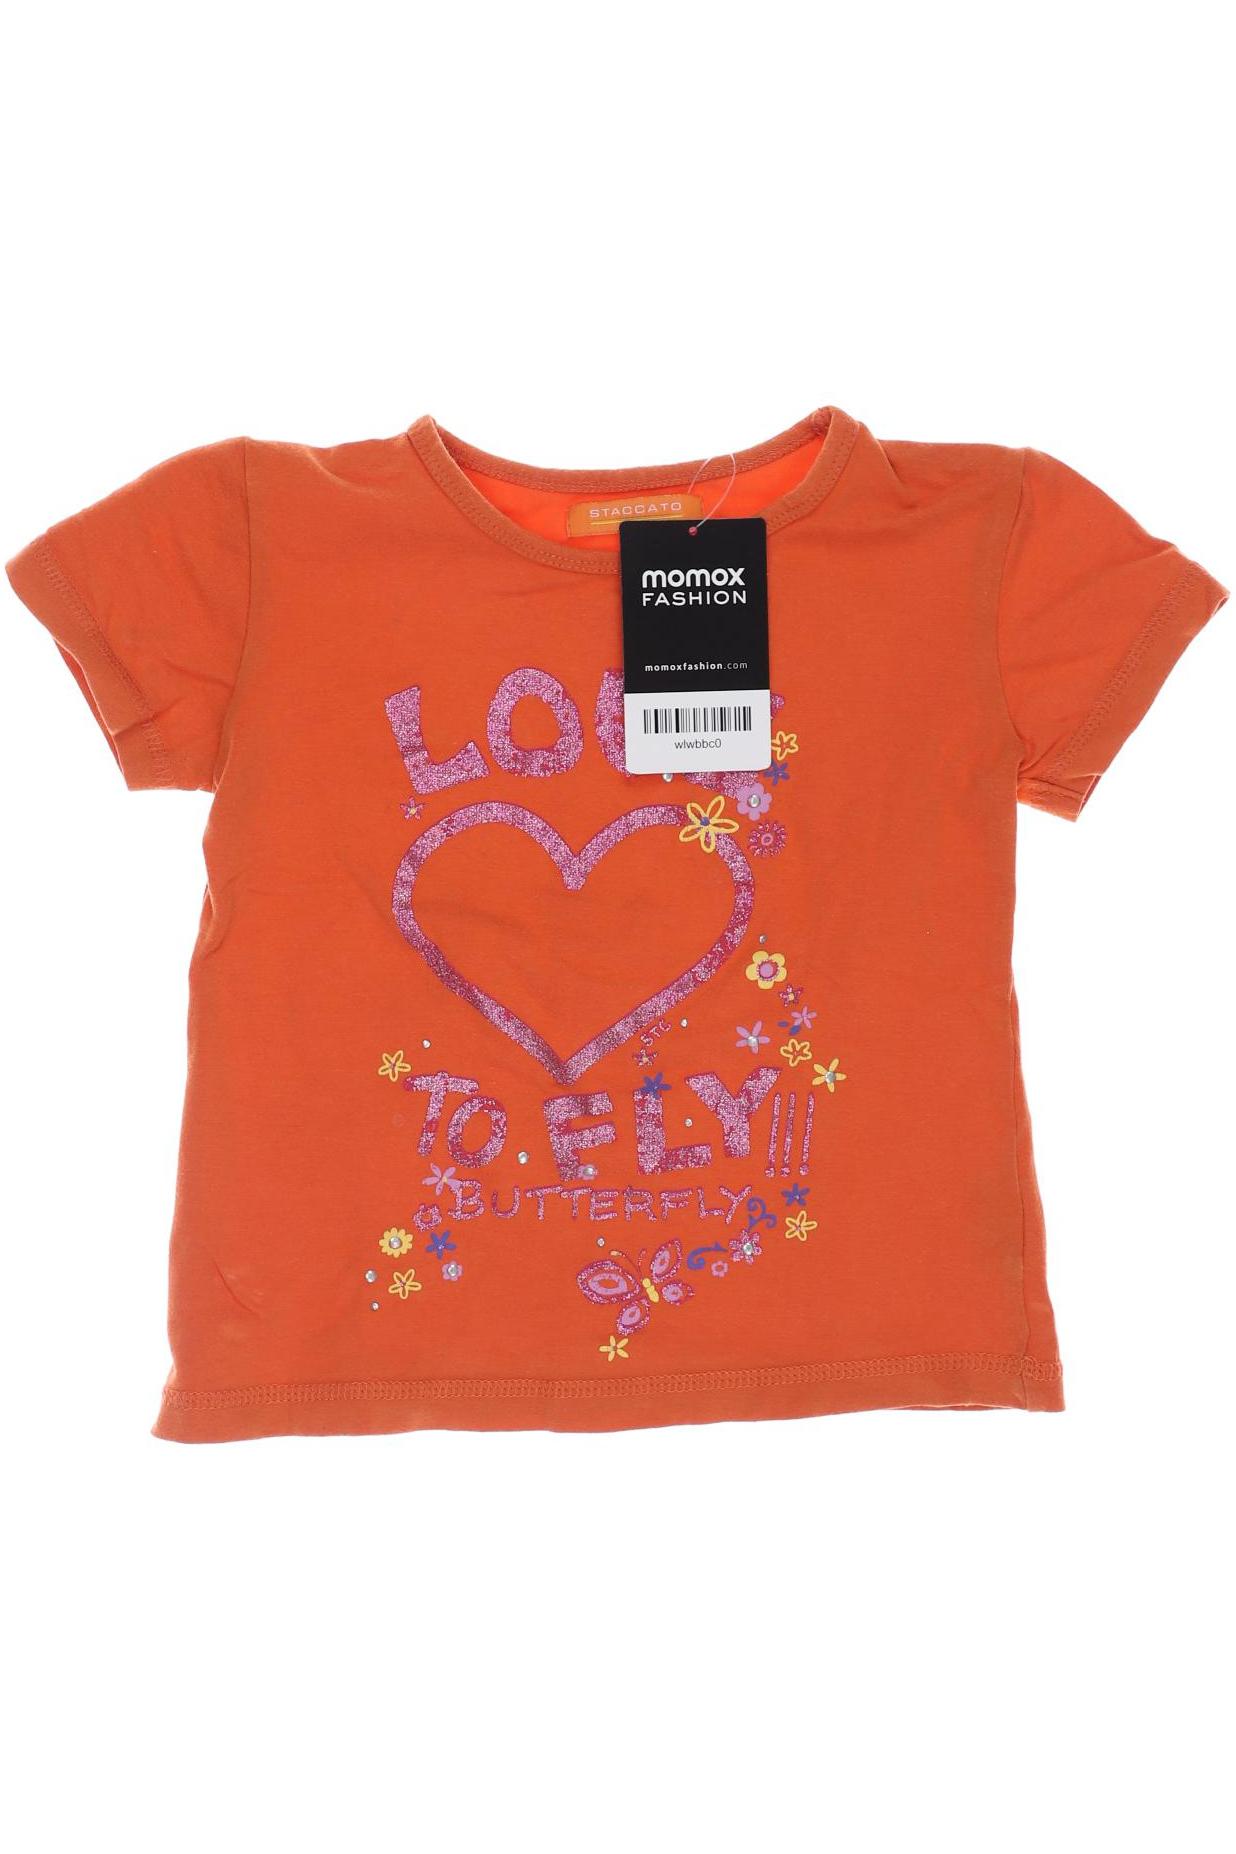 Staccato Mädchen T-Shirt, orange von Staccato